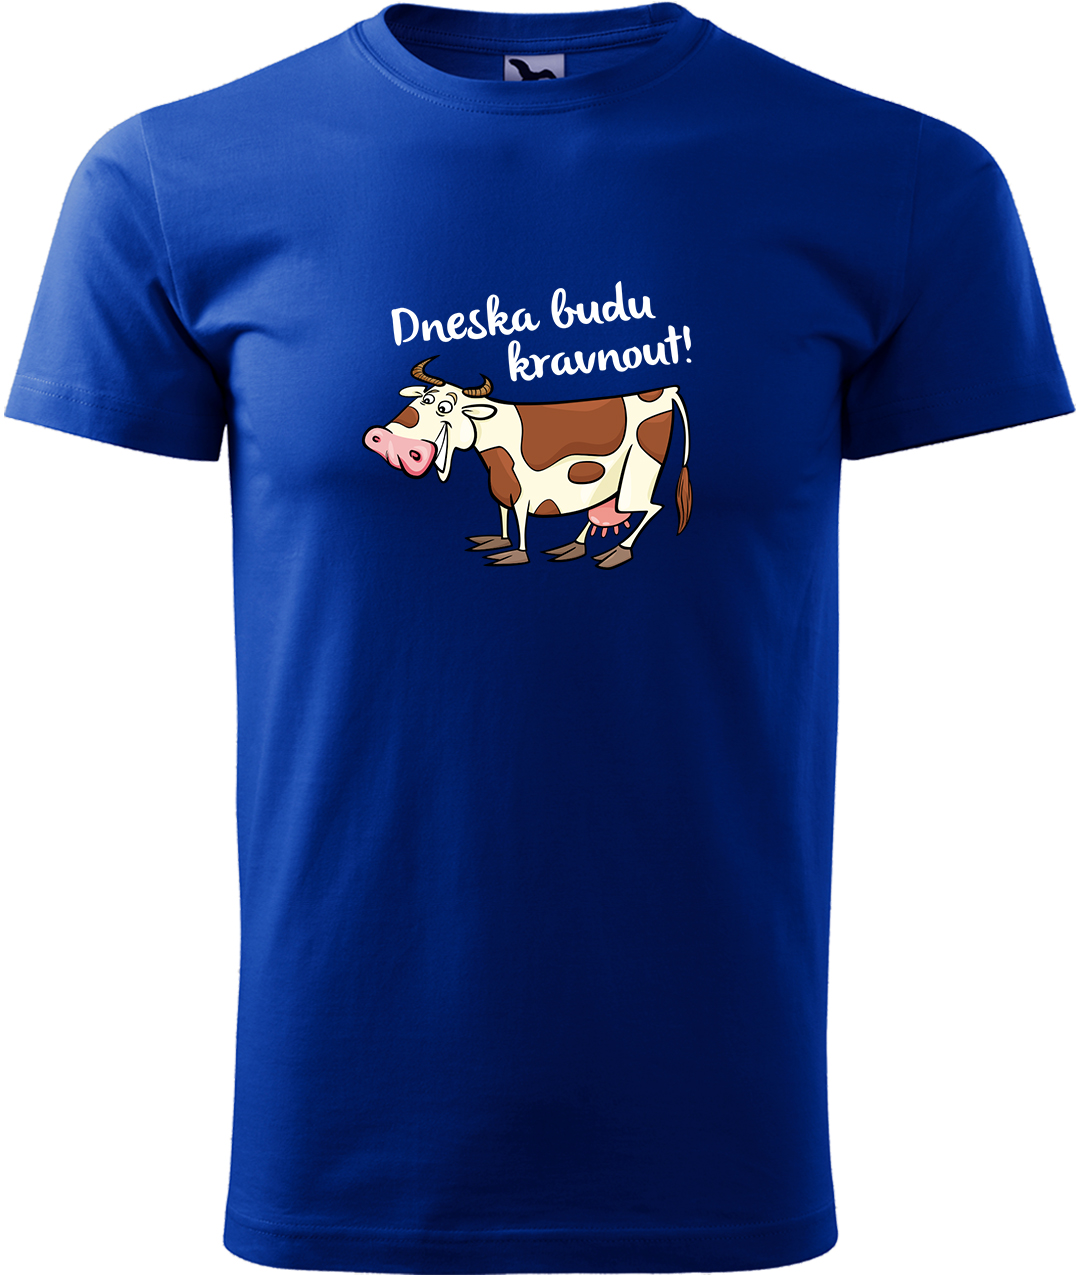 Pánské tričko s krávou - Dneska budu kravnout! Velikost: M, Barva: Královská modrá (05), Střih: pánský